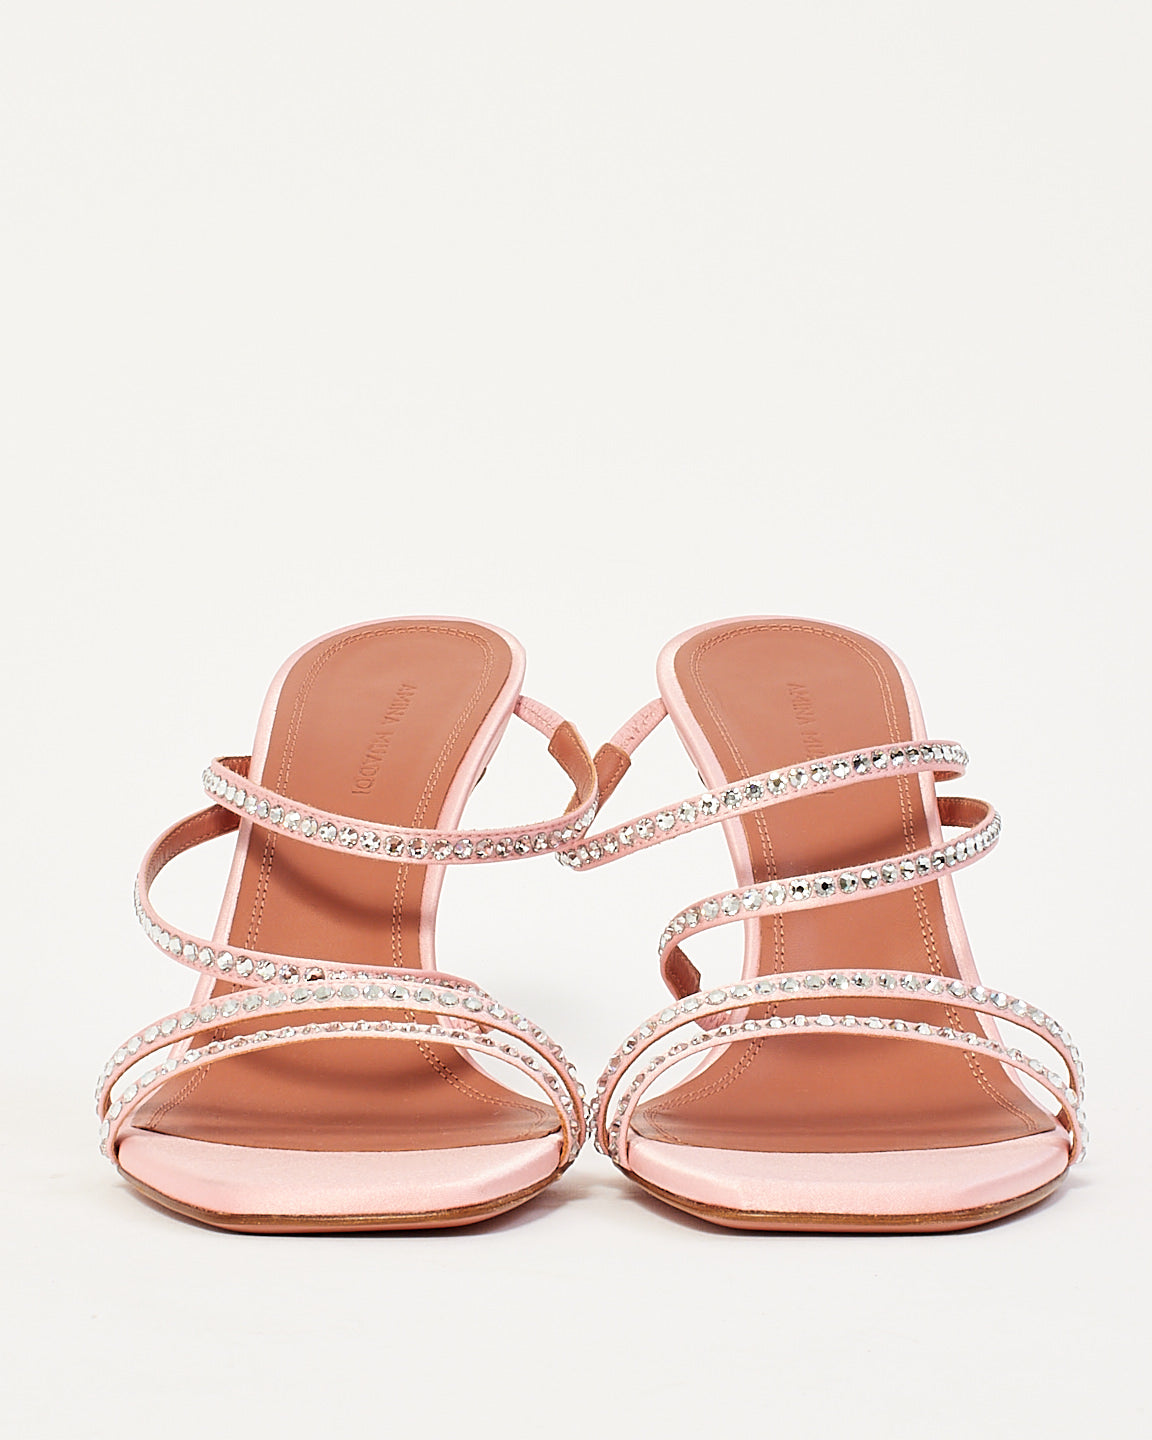 Amina Muaddi Pink Naima Embellished Satin Sandals - 39